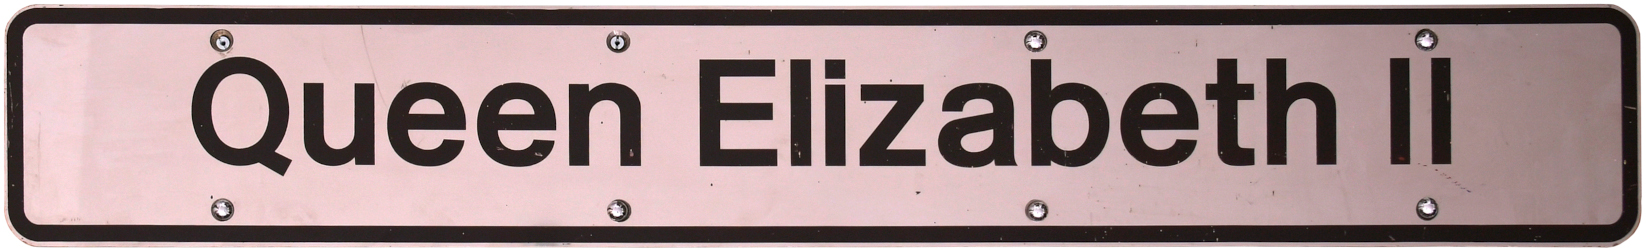 QUEEN ELIZABETH II locomotive nameplate